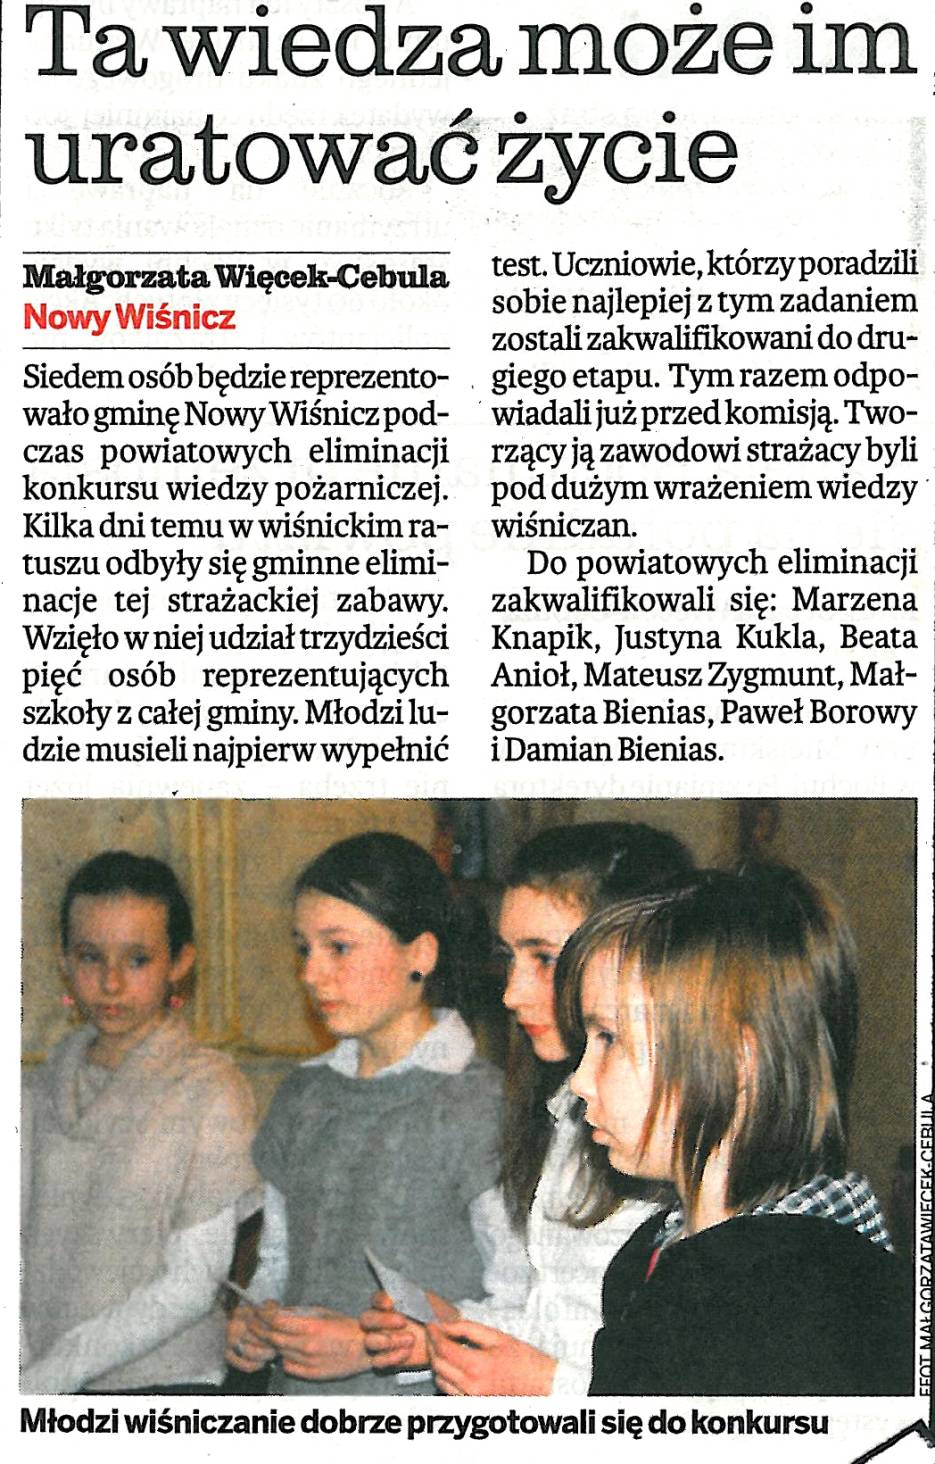  Ta wiedza może im uratować życie - Gazeta Krakowska - 15.03.2011